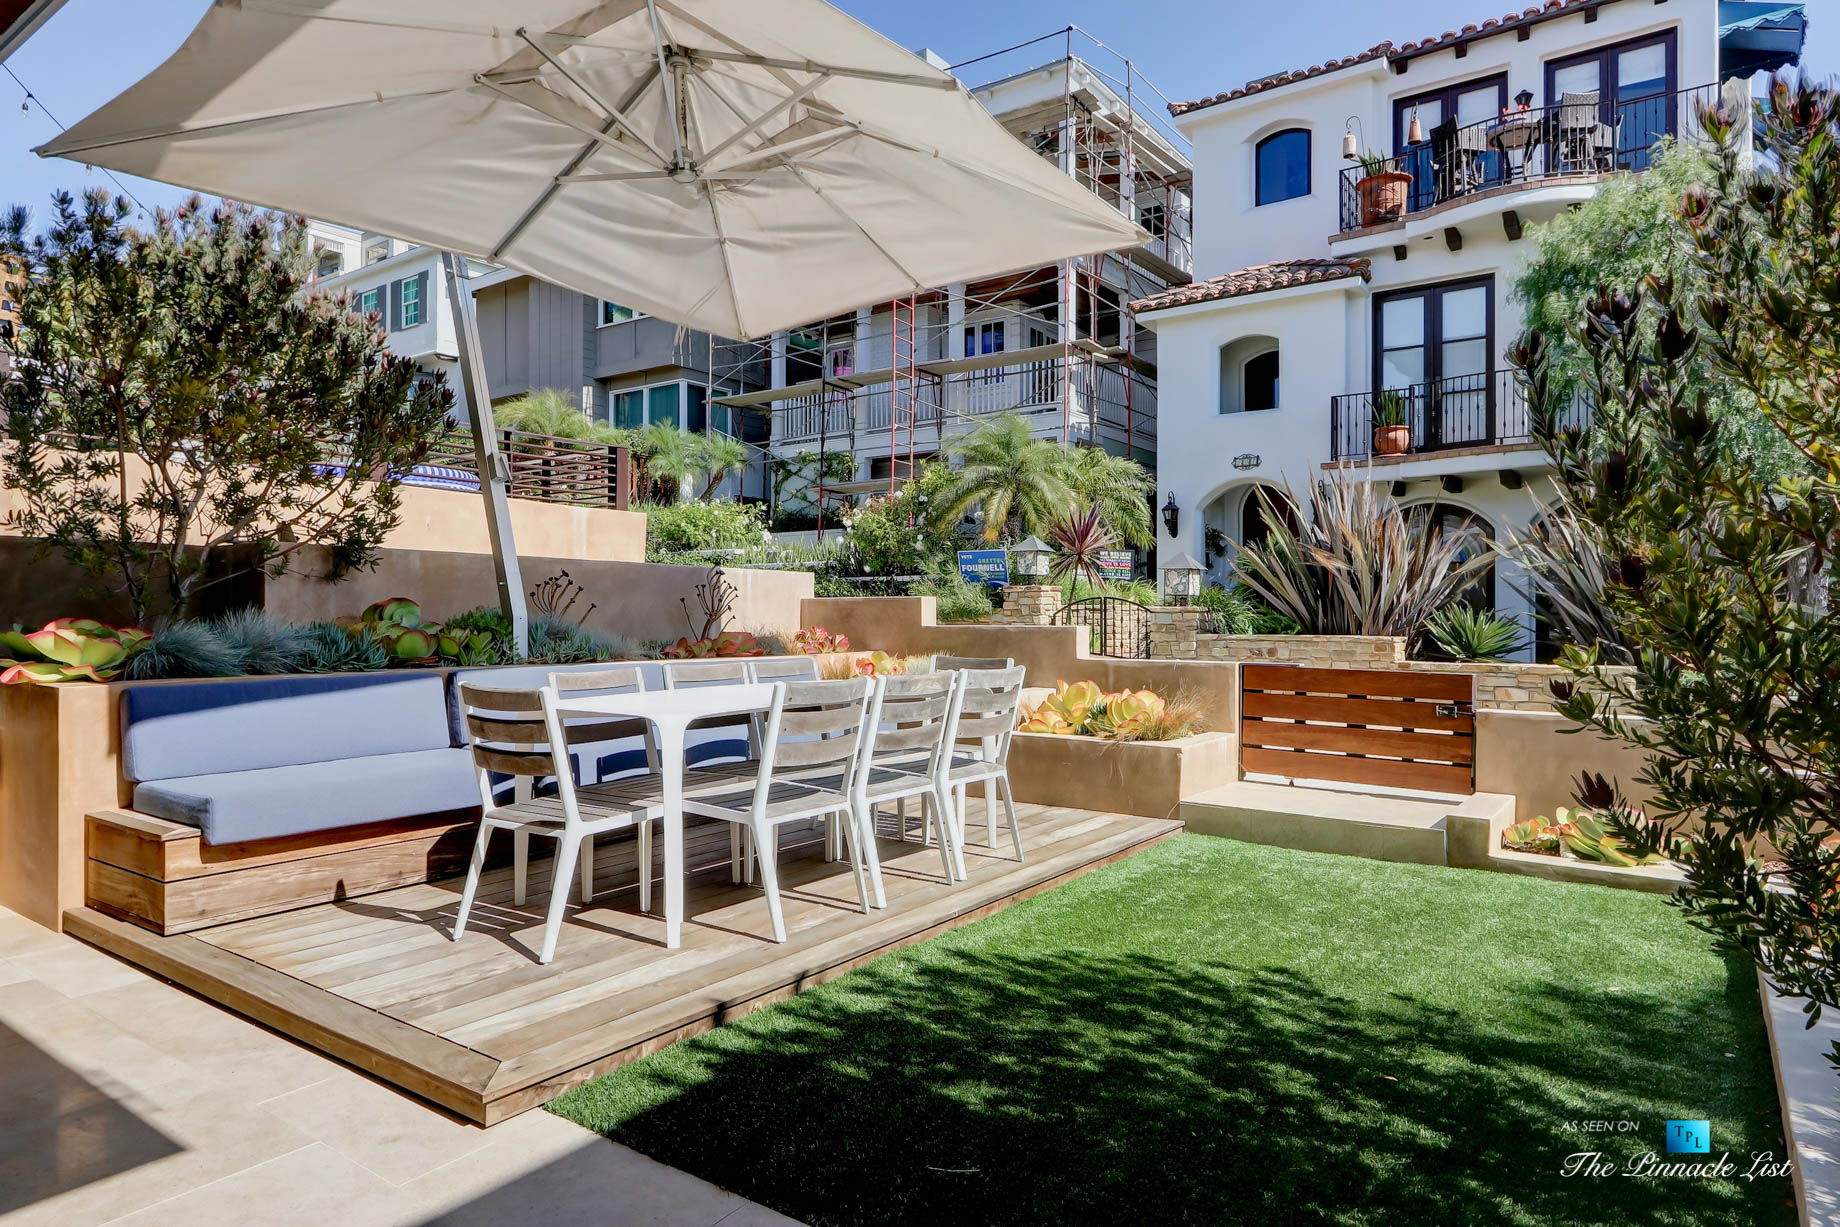 205 20th Street, Manhattan Beach, CA, USA - Patio and Yard - Luxury Real Estate - Ocean View Home